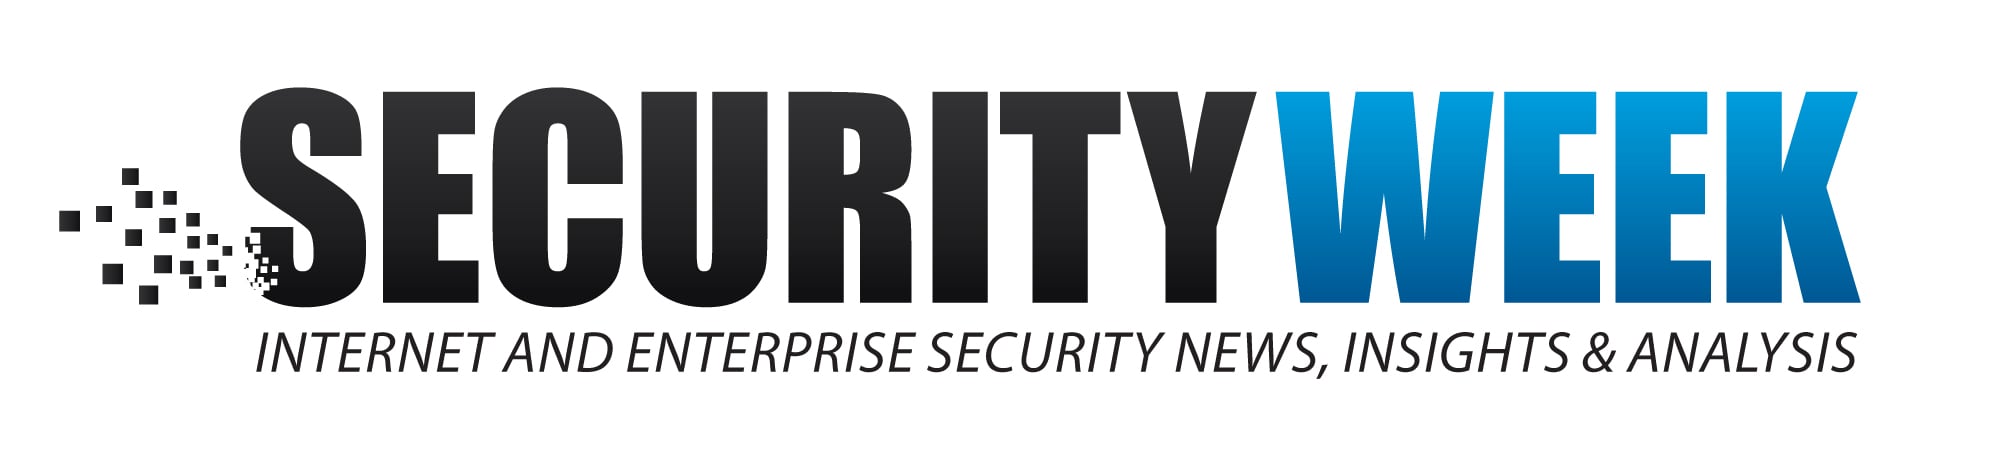 Securityweek-logo